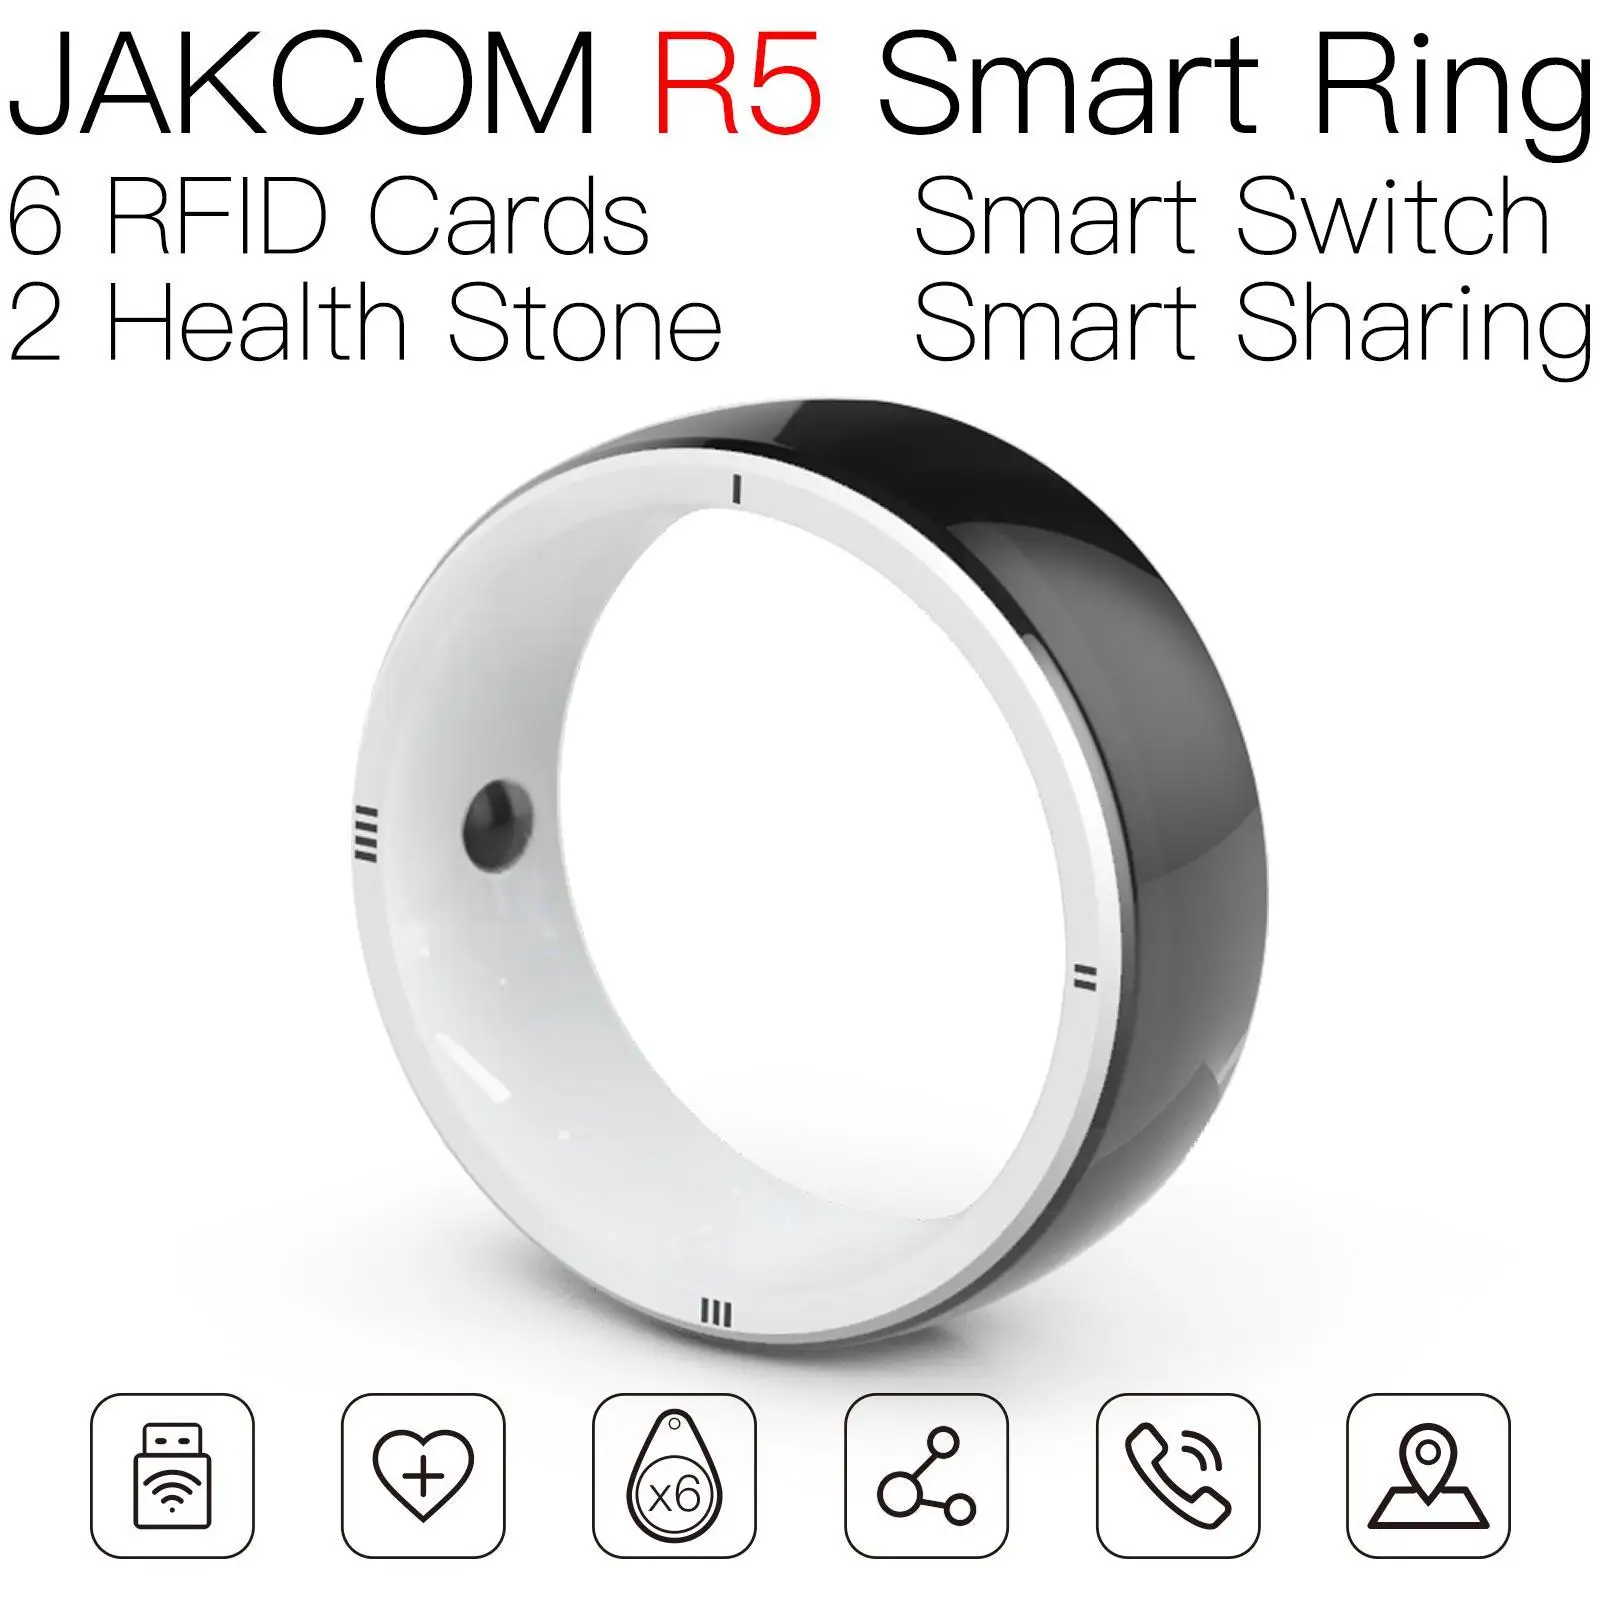 

Умное кольцо JAKCOM R5, новее, чем стандартный чип, платеж, все собаки, аварийная карта nieuwe, идентификация драйвера rfid